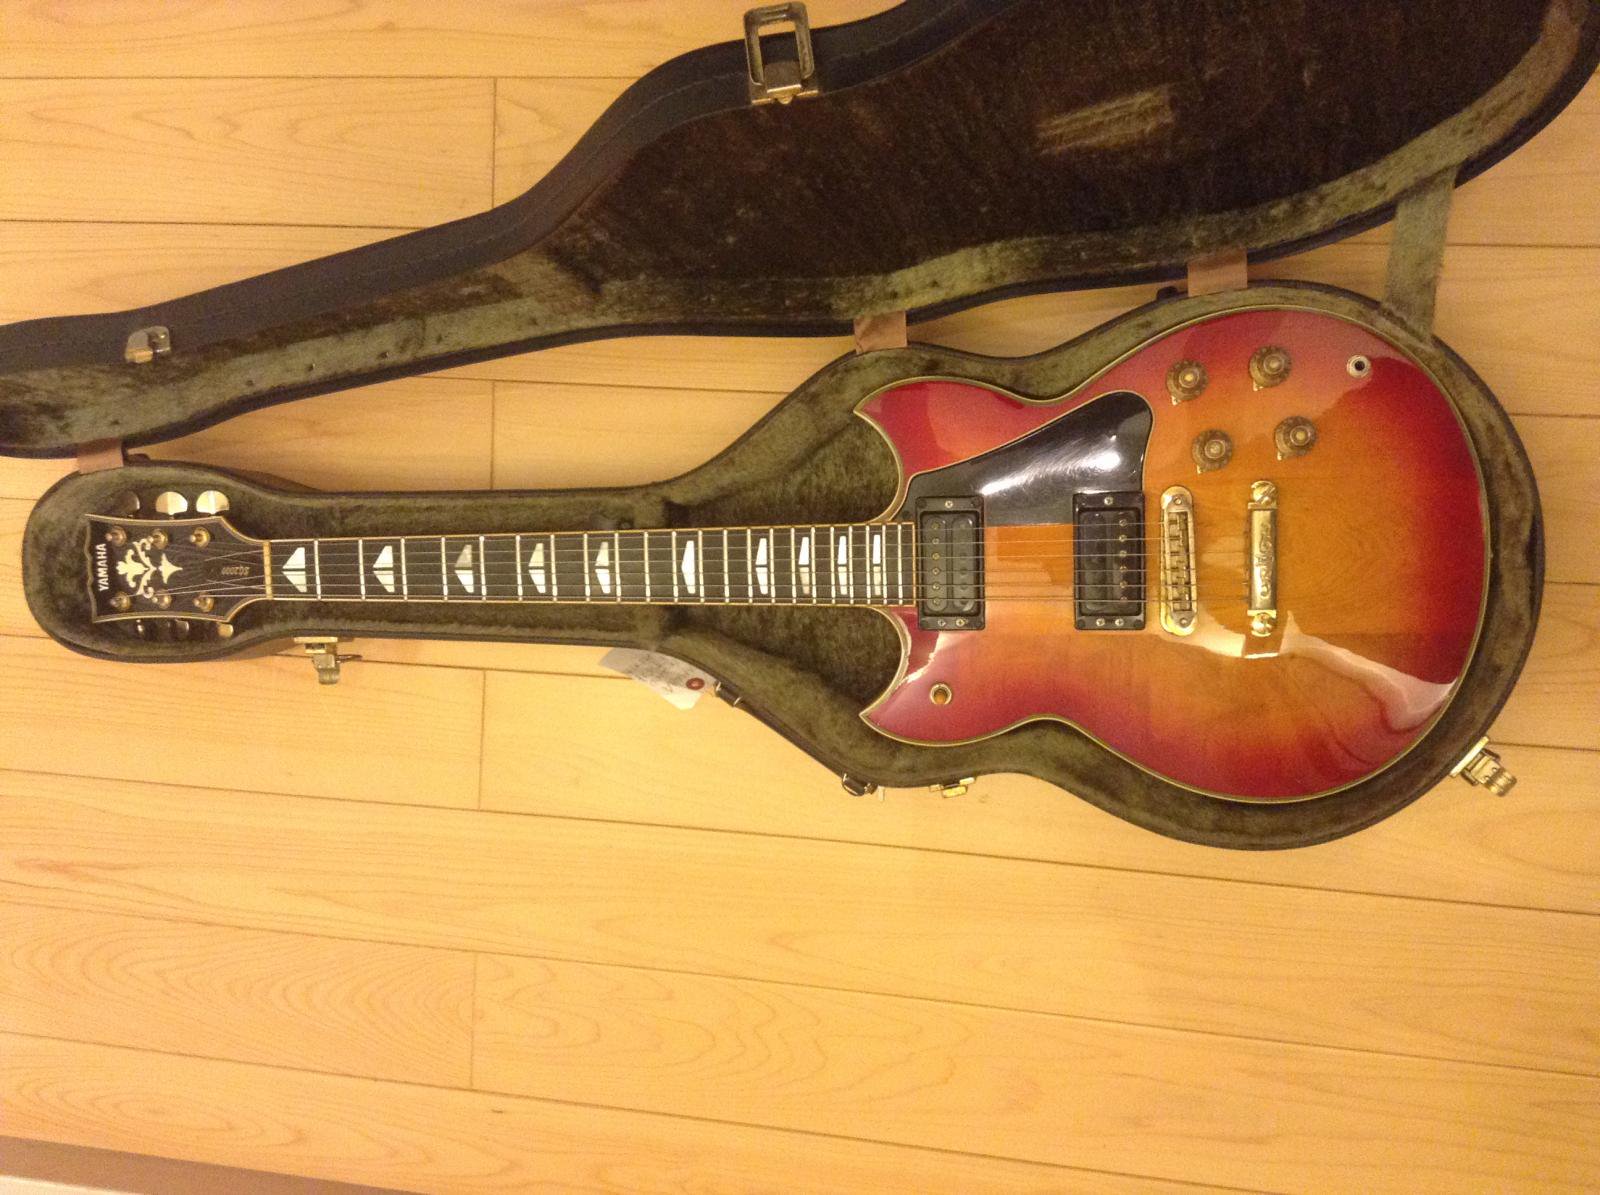 ﾔﾏﾊ/YAMAHA SG-2000 ﾚｯﾄﾞ・ｻﾝﾊﾞｰｽﾄ - C・I・K Custom Instrument K 富山県砺波市でギター等